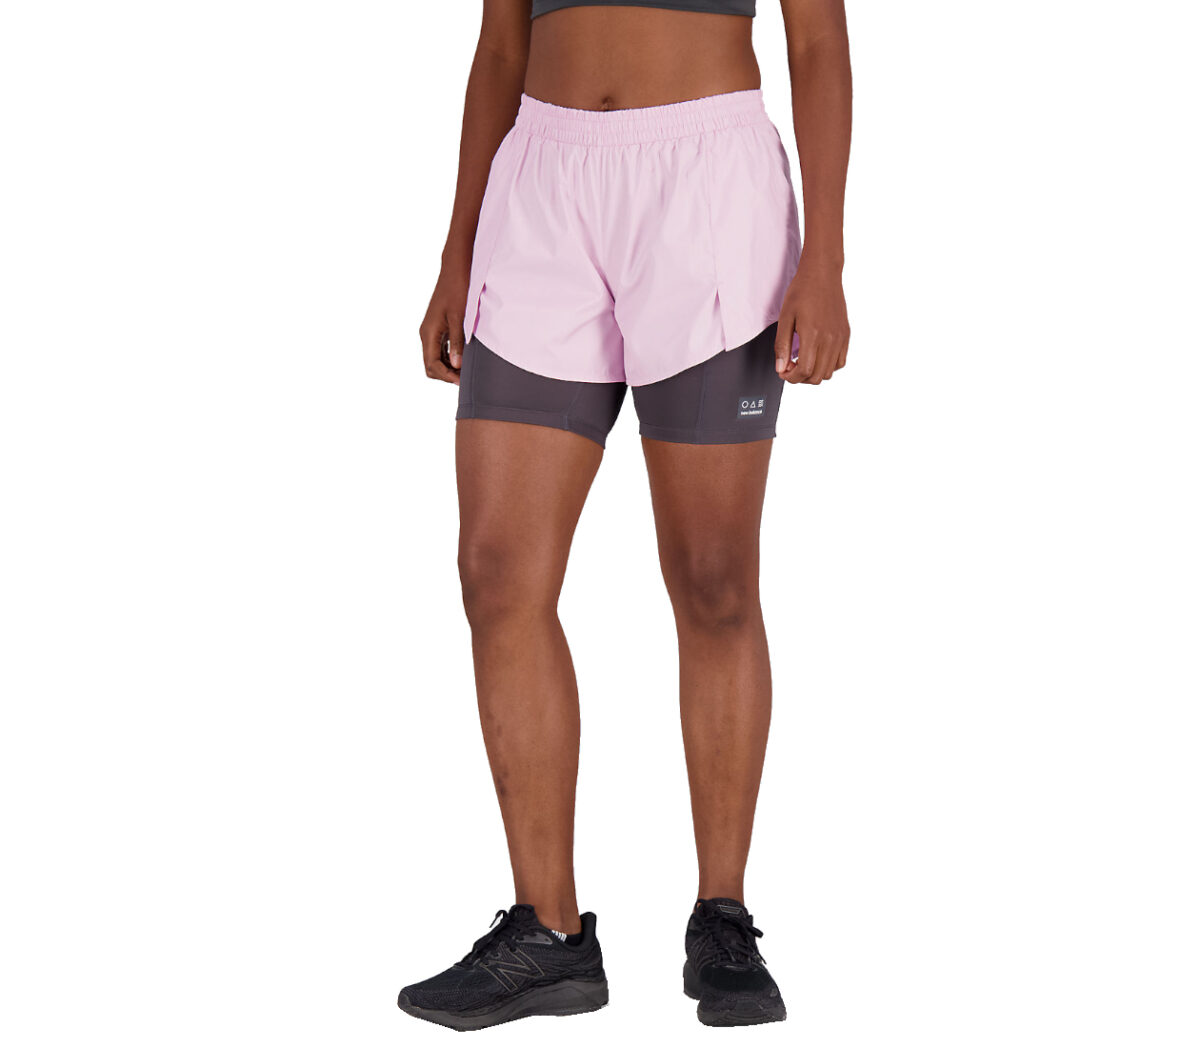 Pantaloncino New Balance impact run AT 3 inch 2in1 donna rosa